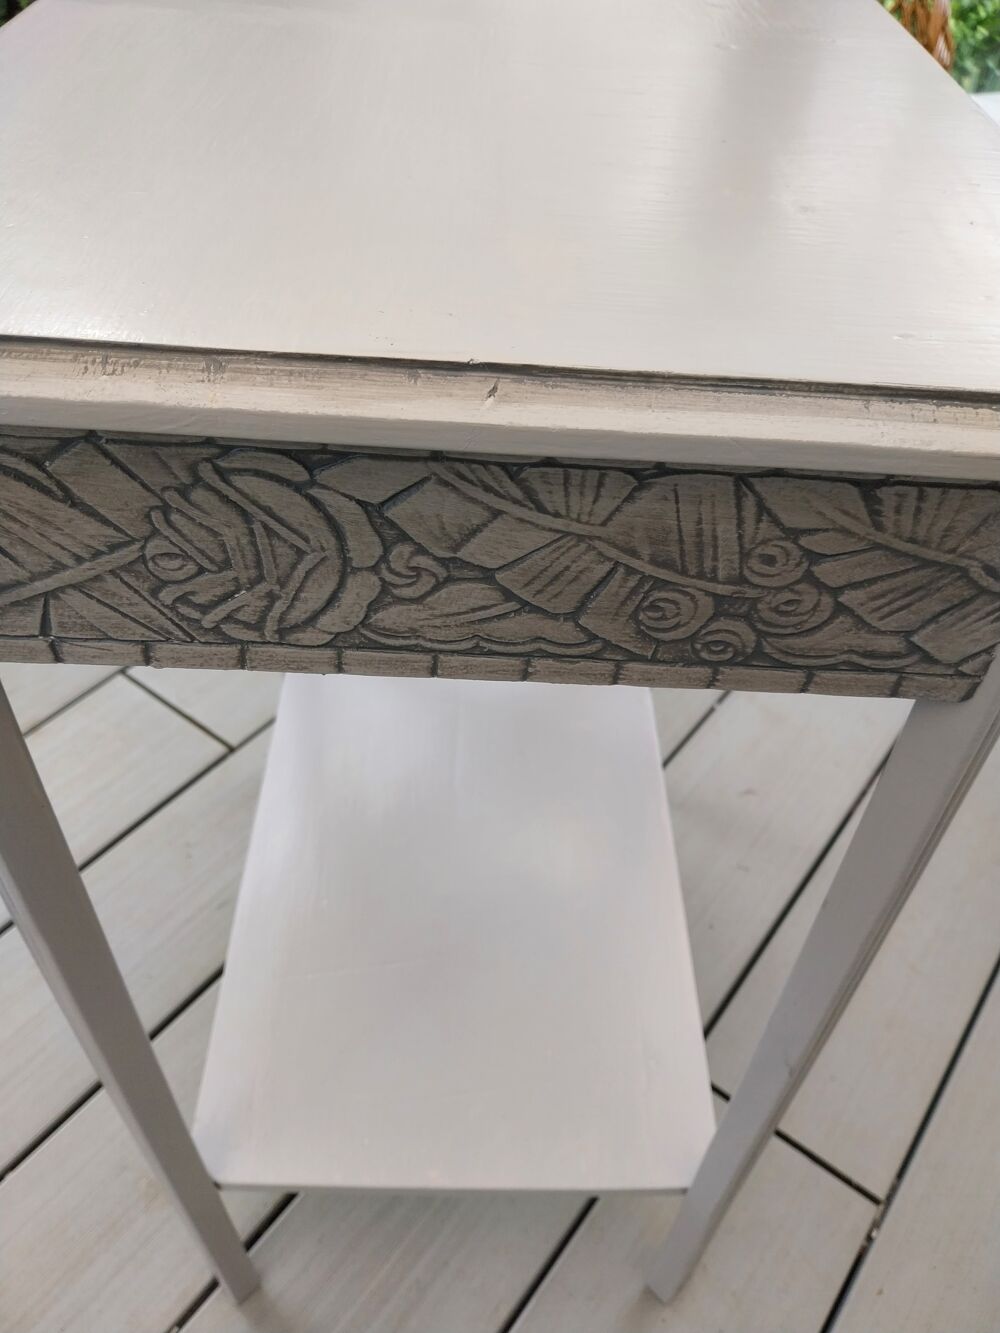 Petite tables ann&eacute;es 1930/1940 grise, patin&eacute;e gris argent
Meubles